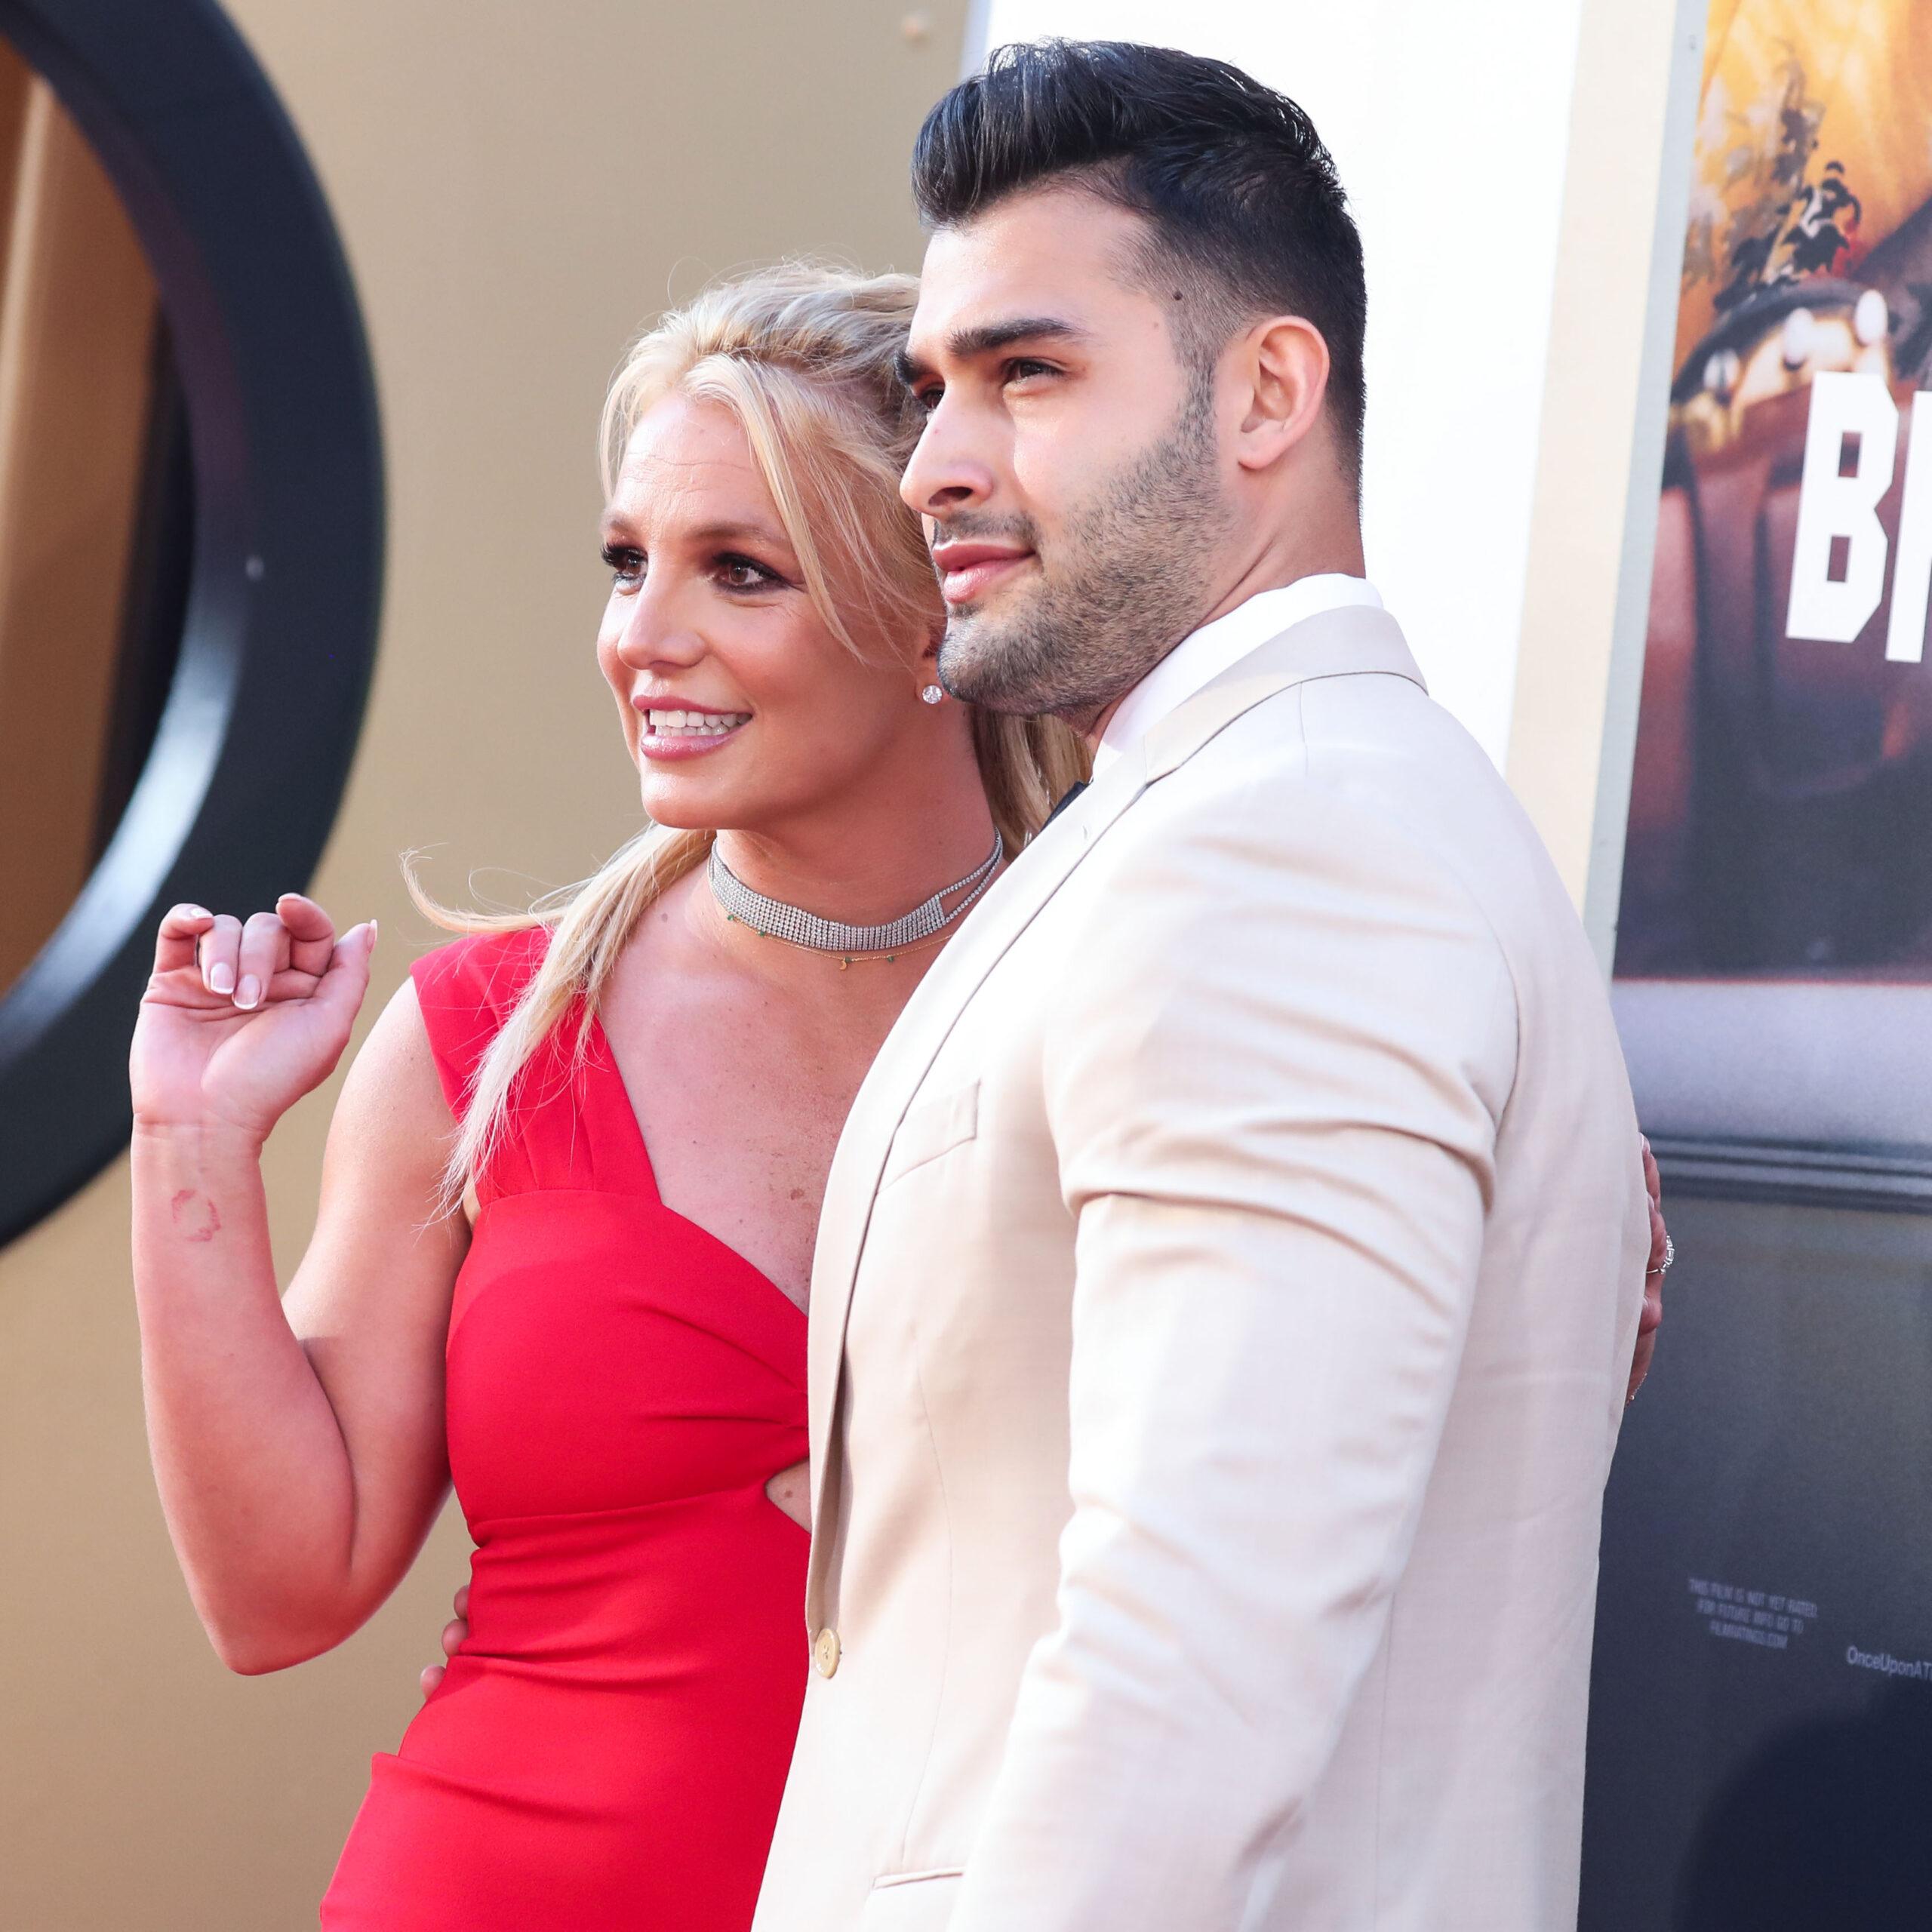 (ARQUIVO) Britney Spears está noiva de Sam Asghari depois de quase 5 anos juntos